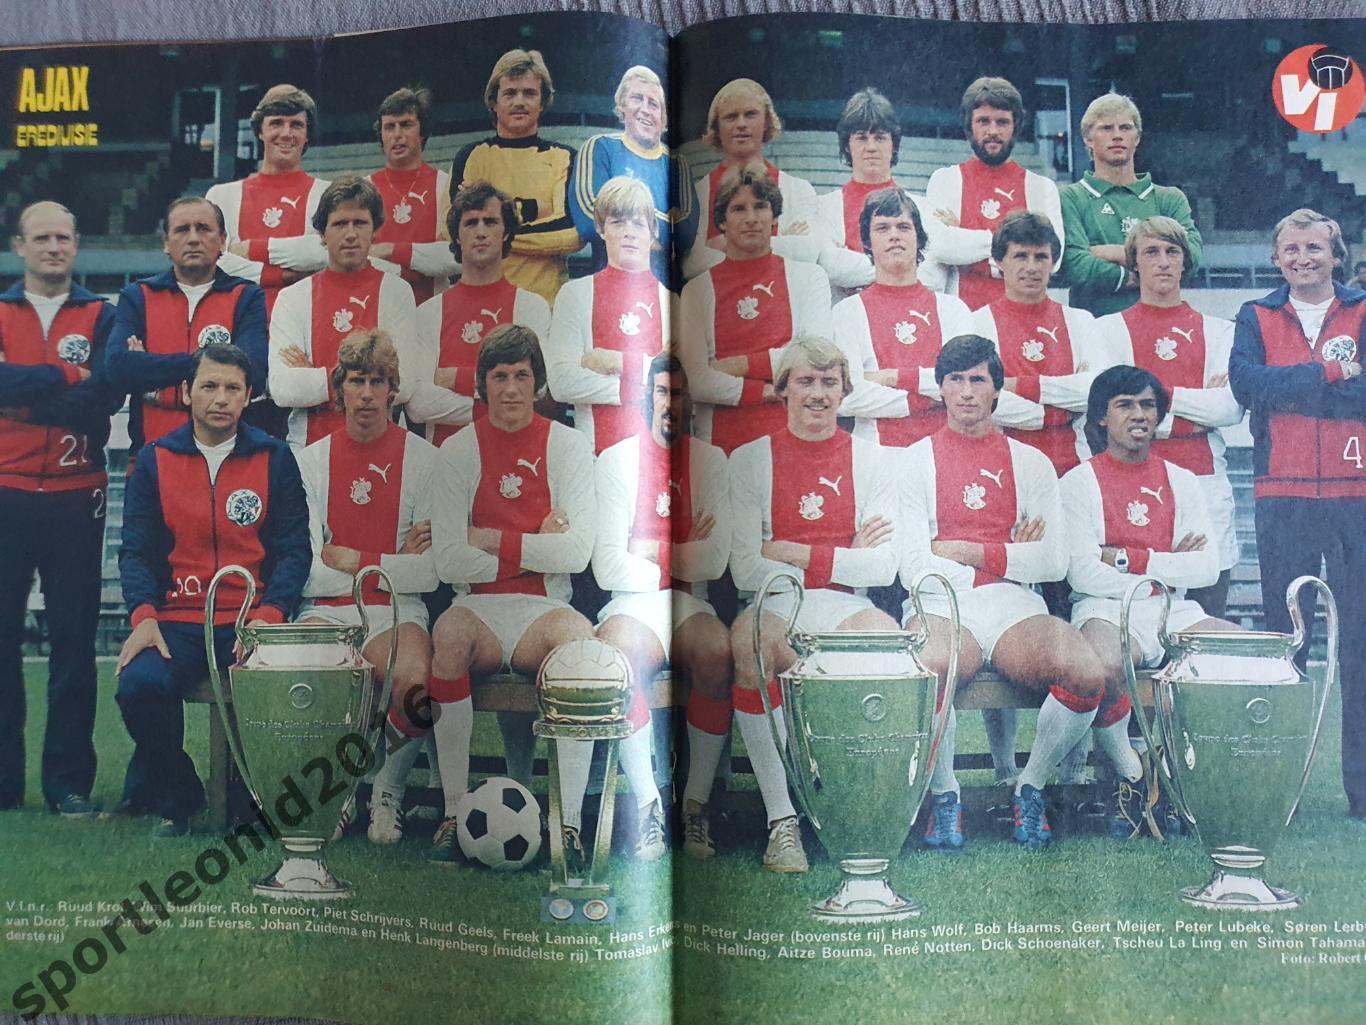 Voetbal International 1977 51 выпуск годовая подписка .3